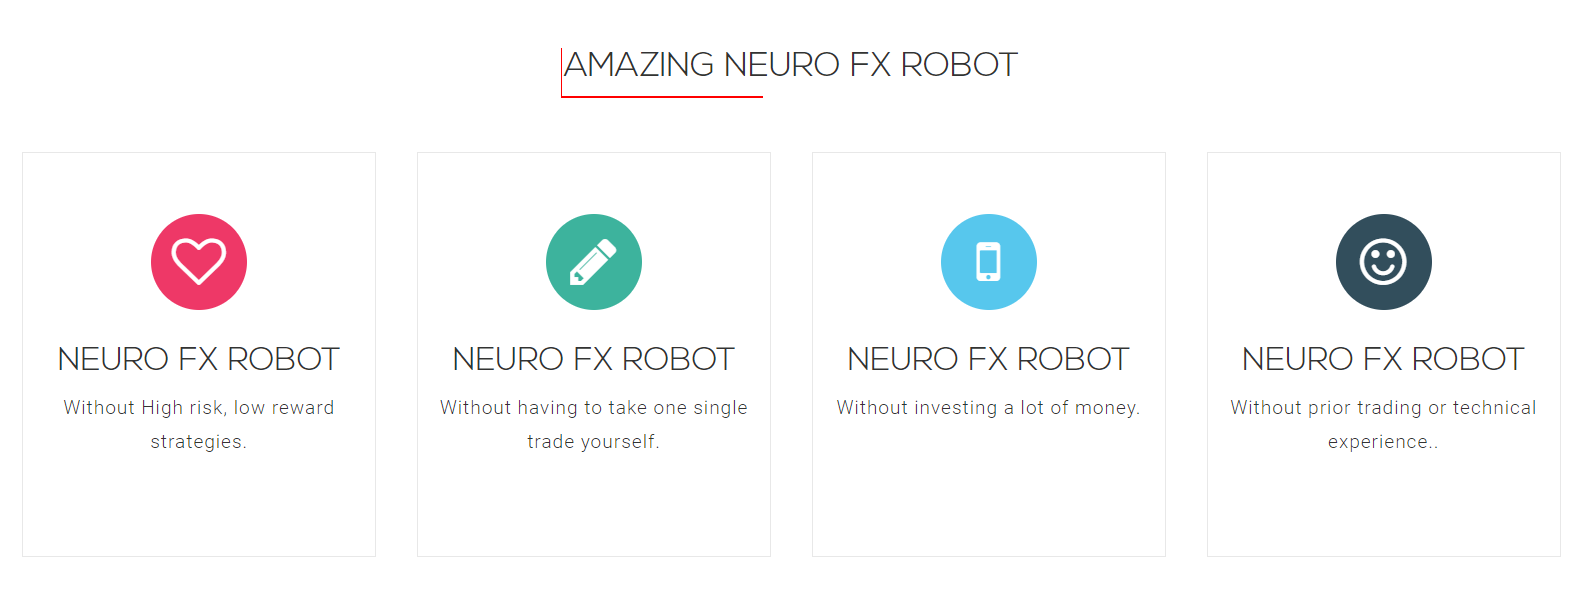 Neuro FX Robot features